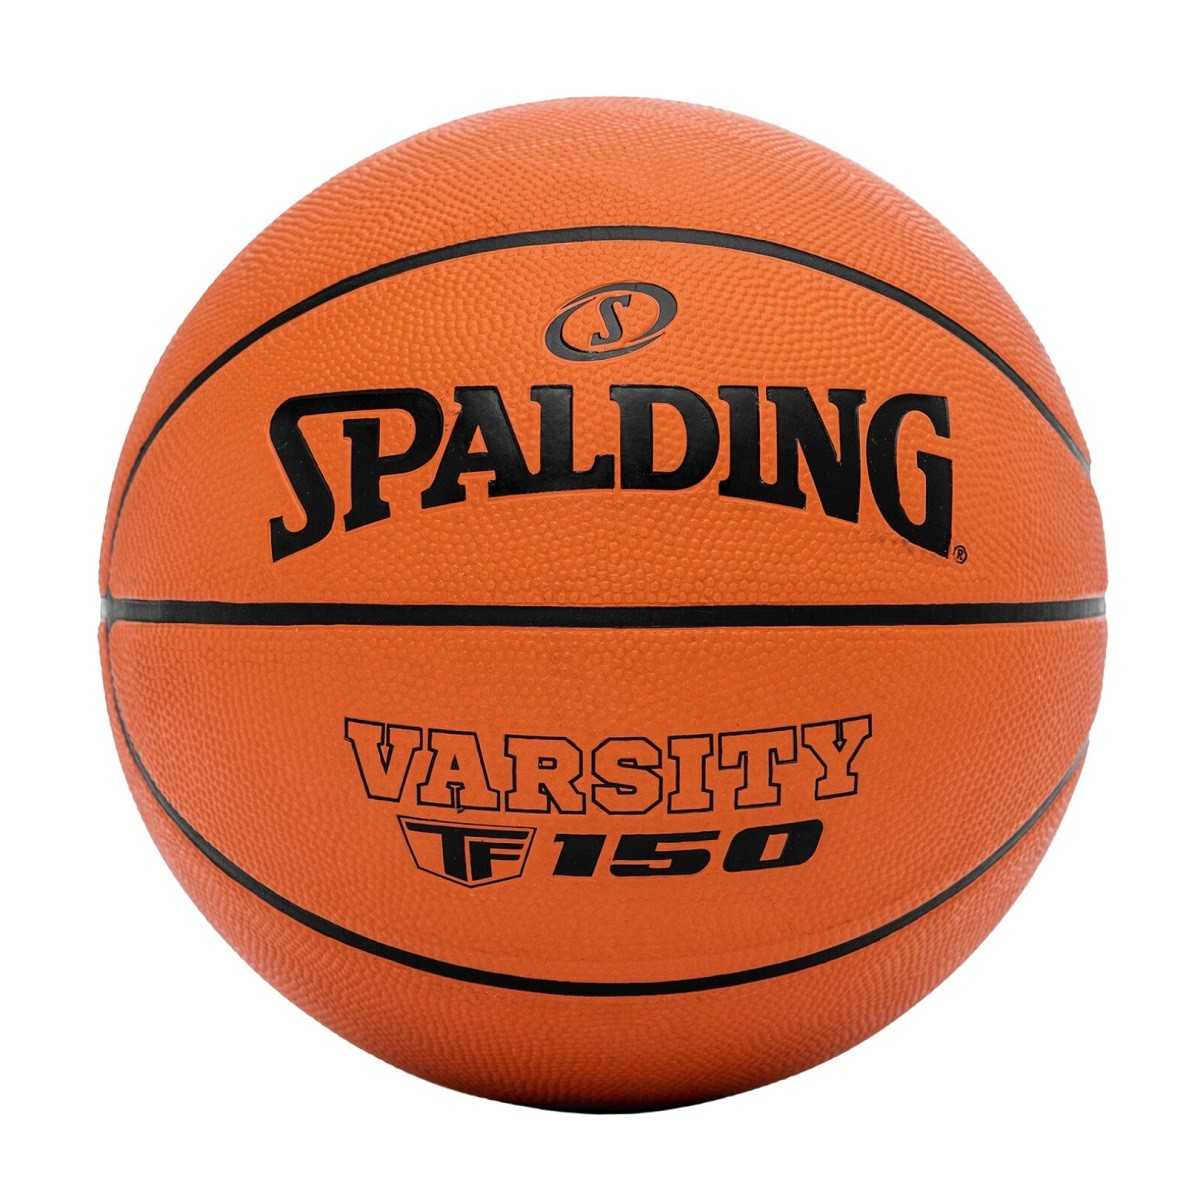 Spalding Warsity krepšinio kamuolys, 7